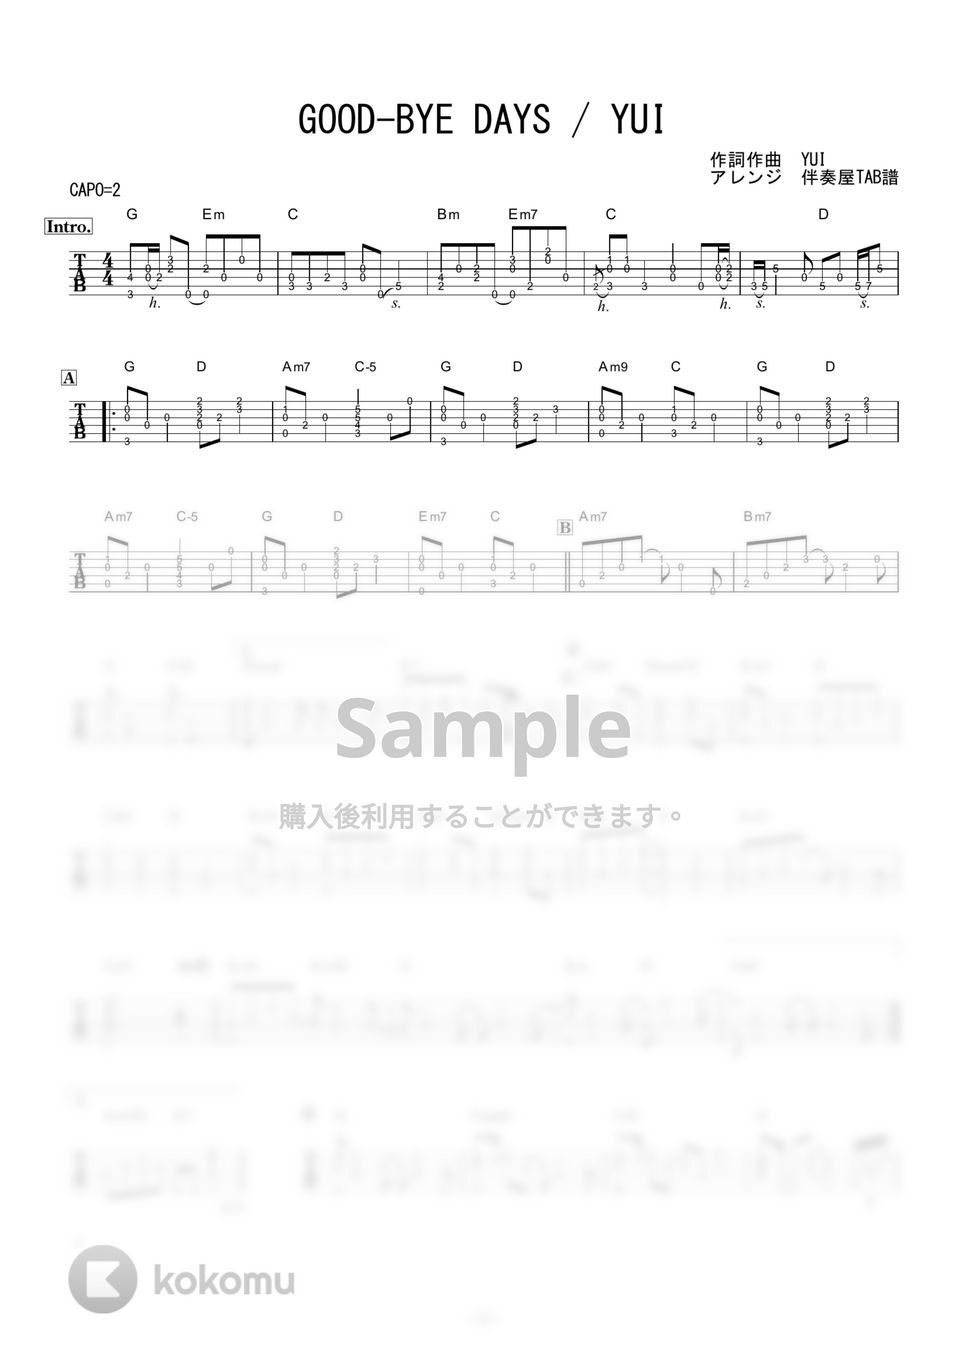 YUI - GOOD-BYE DAYS (ギター伴奏/イントロ・間奏ソロギター) by 伴奏屋TAB譜